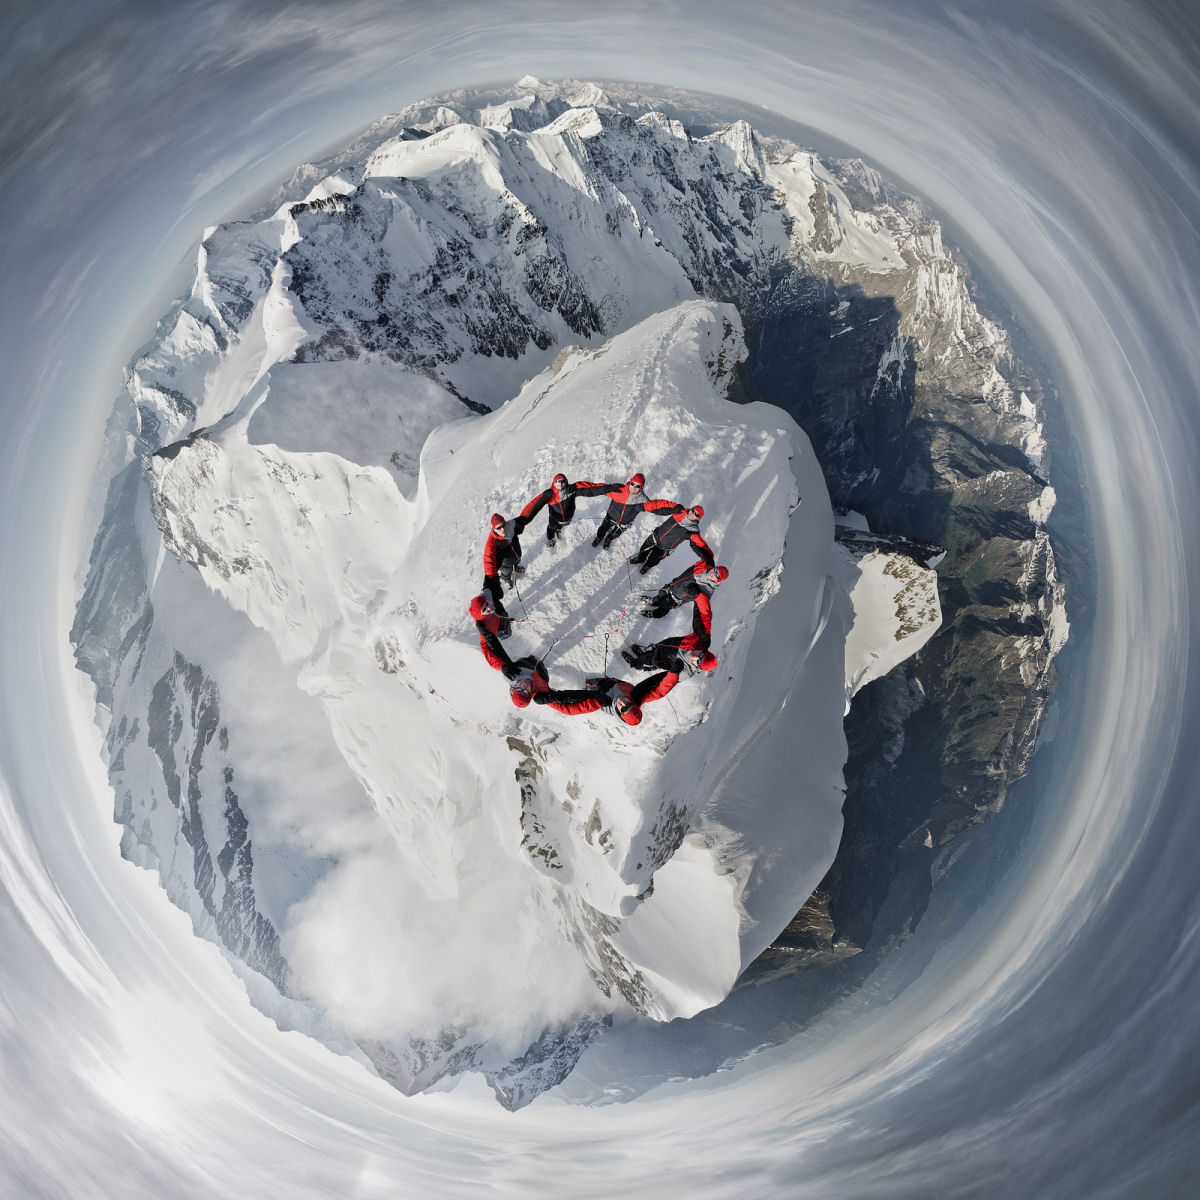 Alpinistas aventureiros escalam os Alpes para fazer uma incrvel sesso de fotos 02